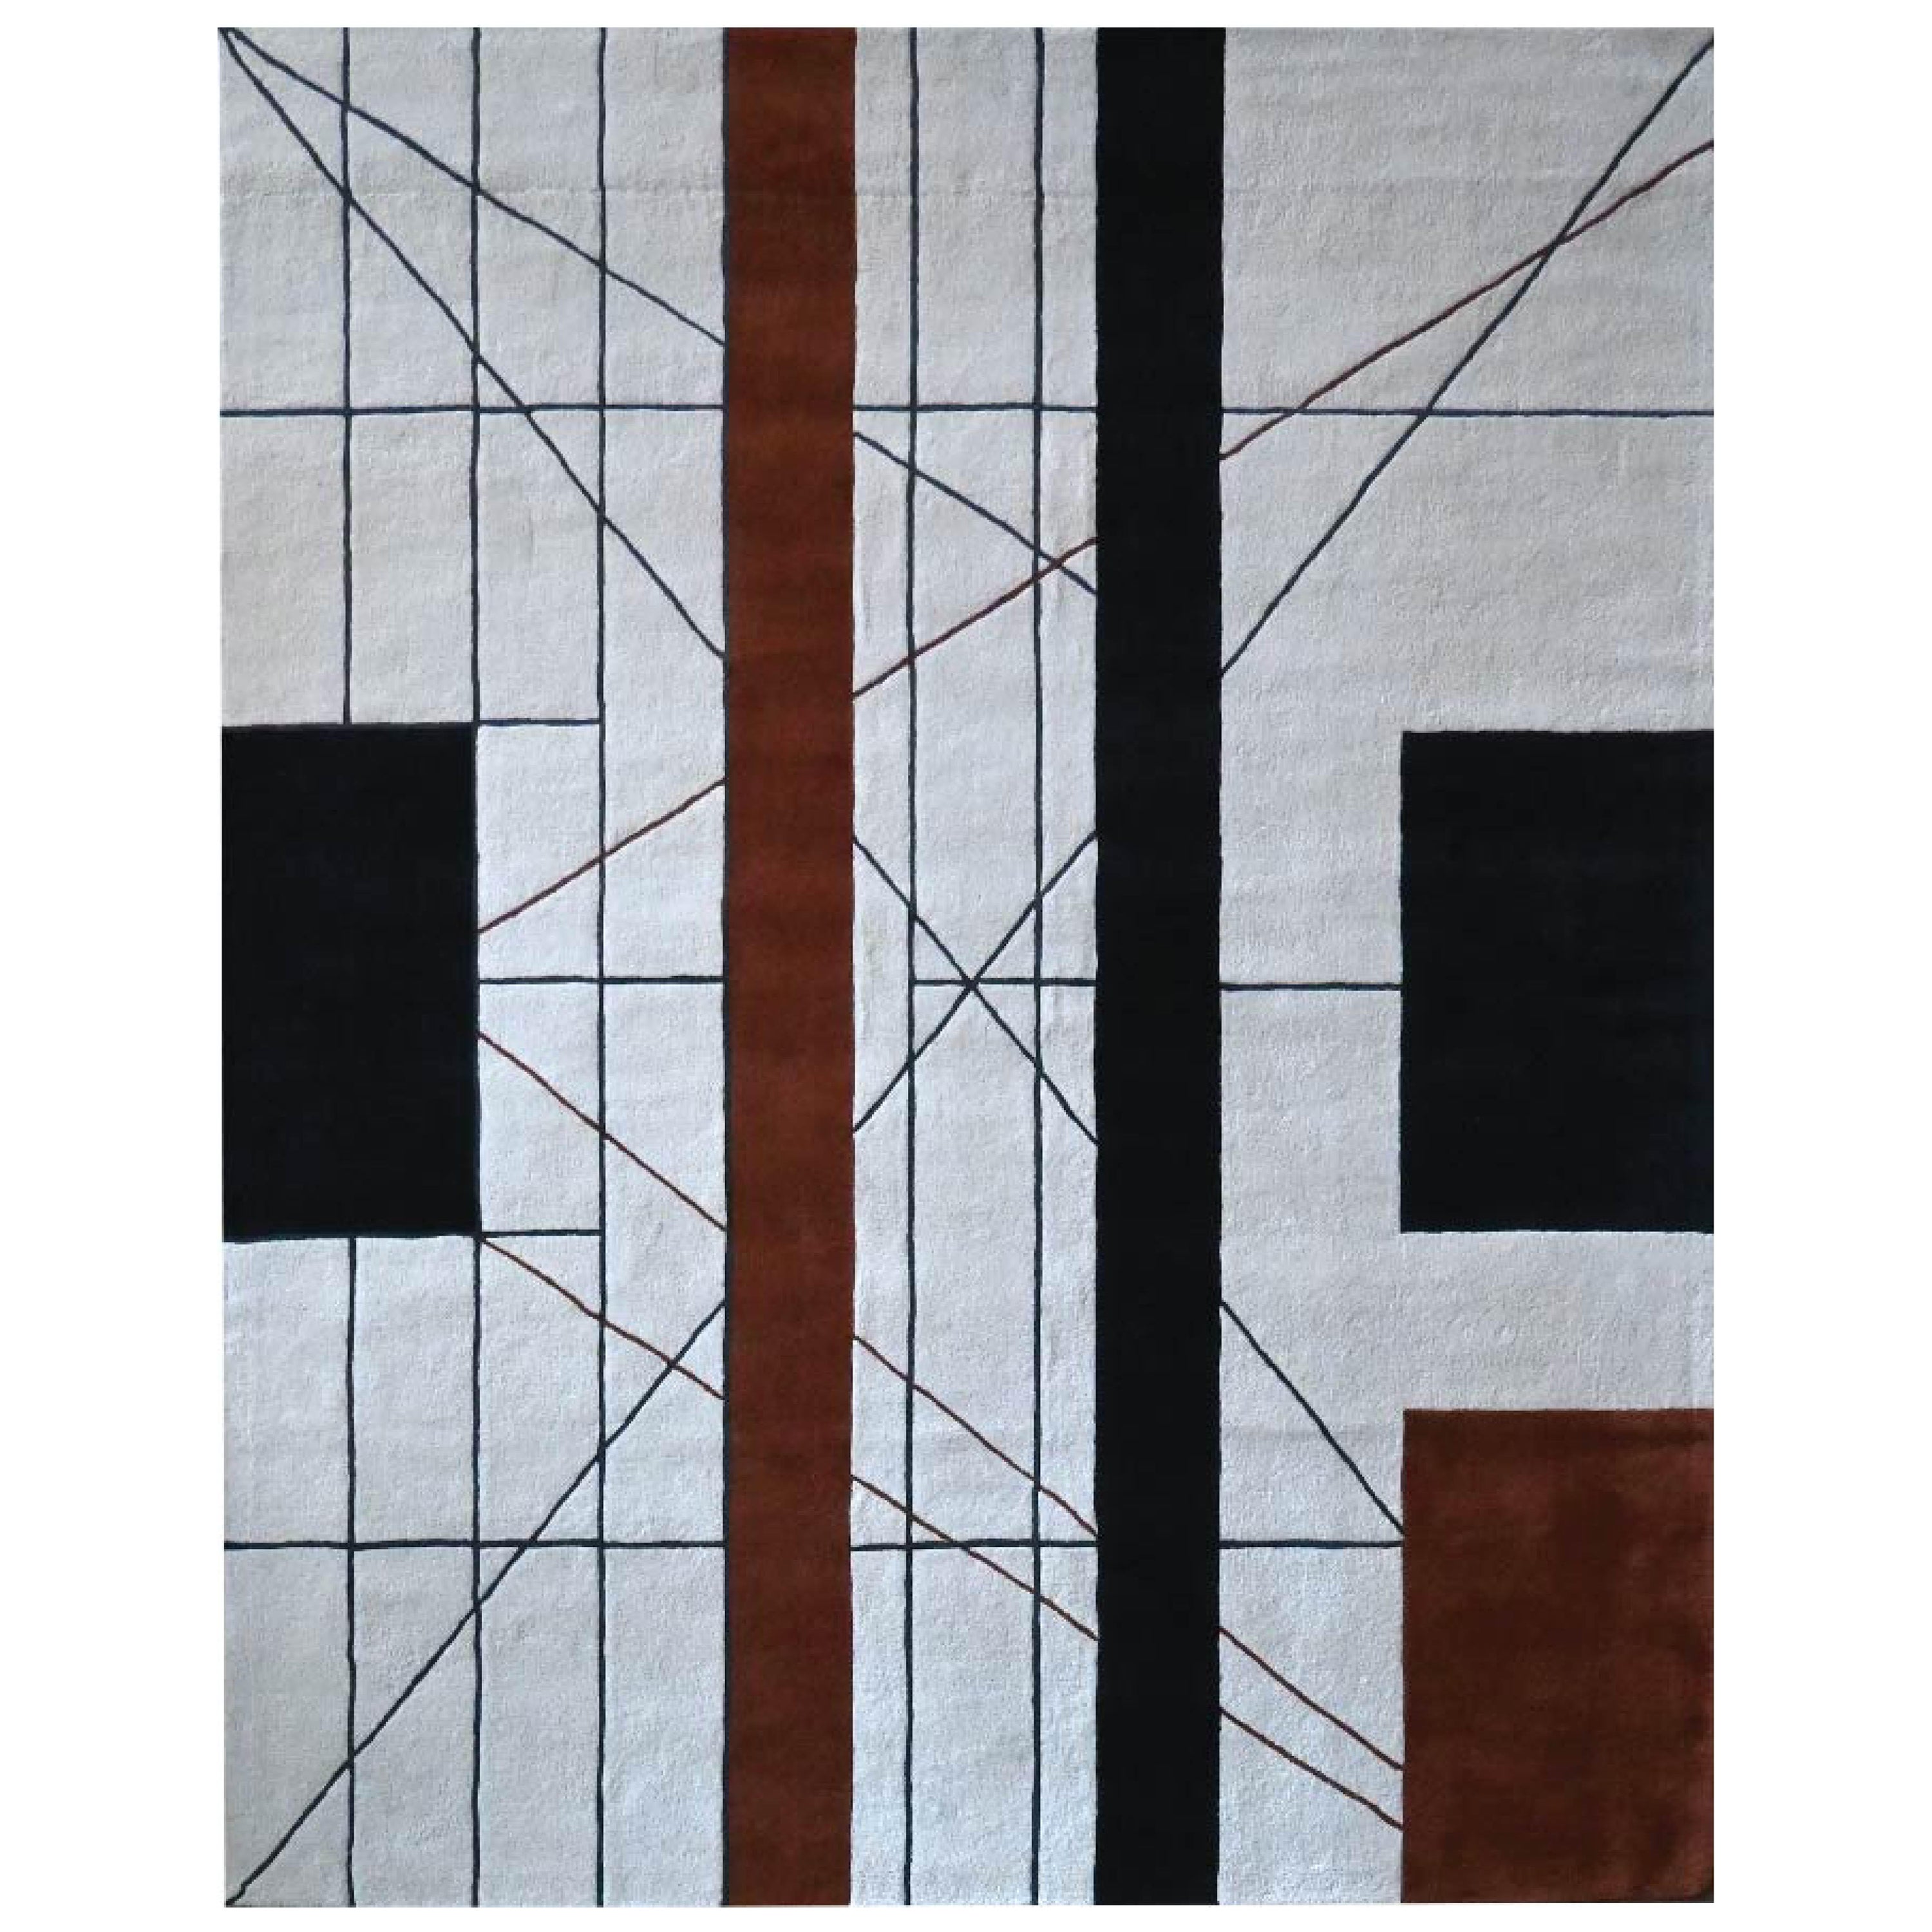 Tapis de sol en laine Pavillon NZ fait main 8' x 10'. Inspiré du musée Le Corbusier